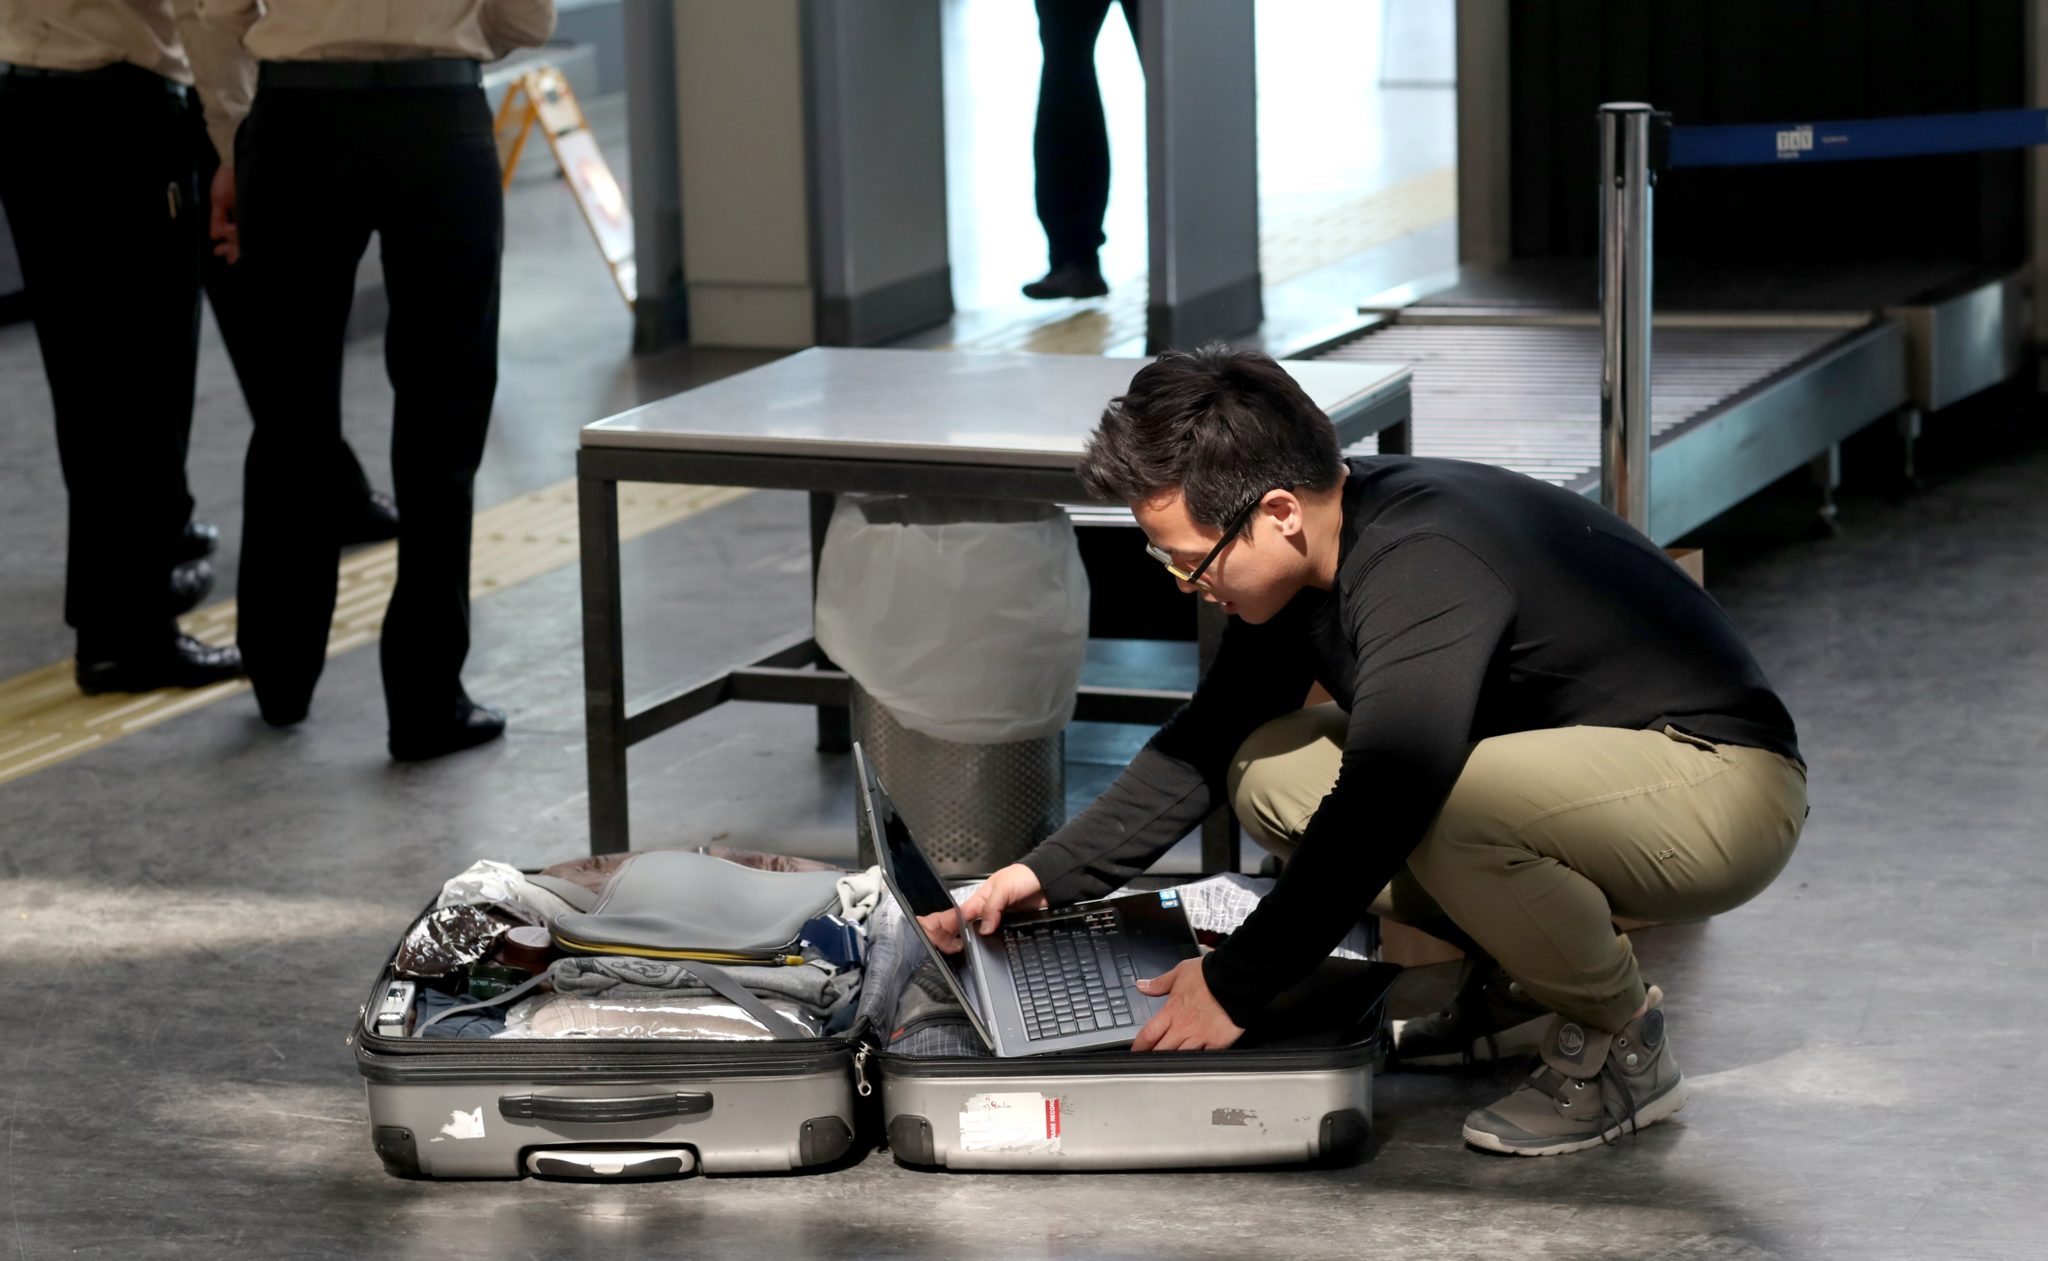 Turcja: kontrola bagażowa na lotnisku w Istambule. Od wczoraj obowiązuje zakaz przewożenia większych urządzeń elektronicznych w samolotach do USA i Wielkiej Brytanii (foto. PAP/EPA/SEDAT SUNA)